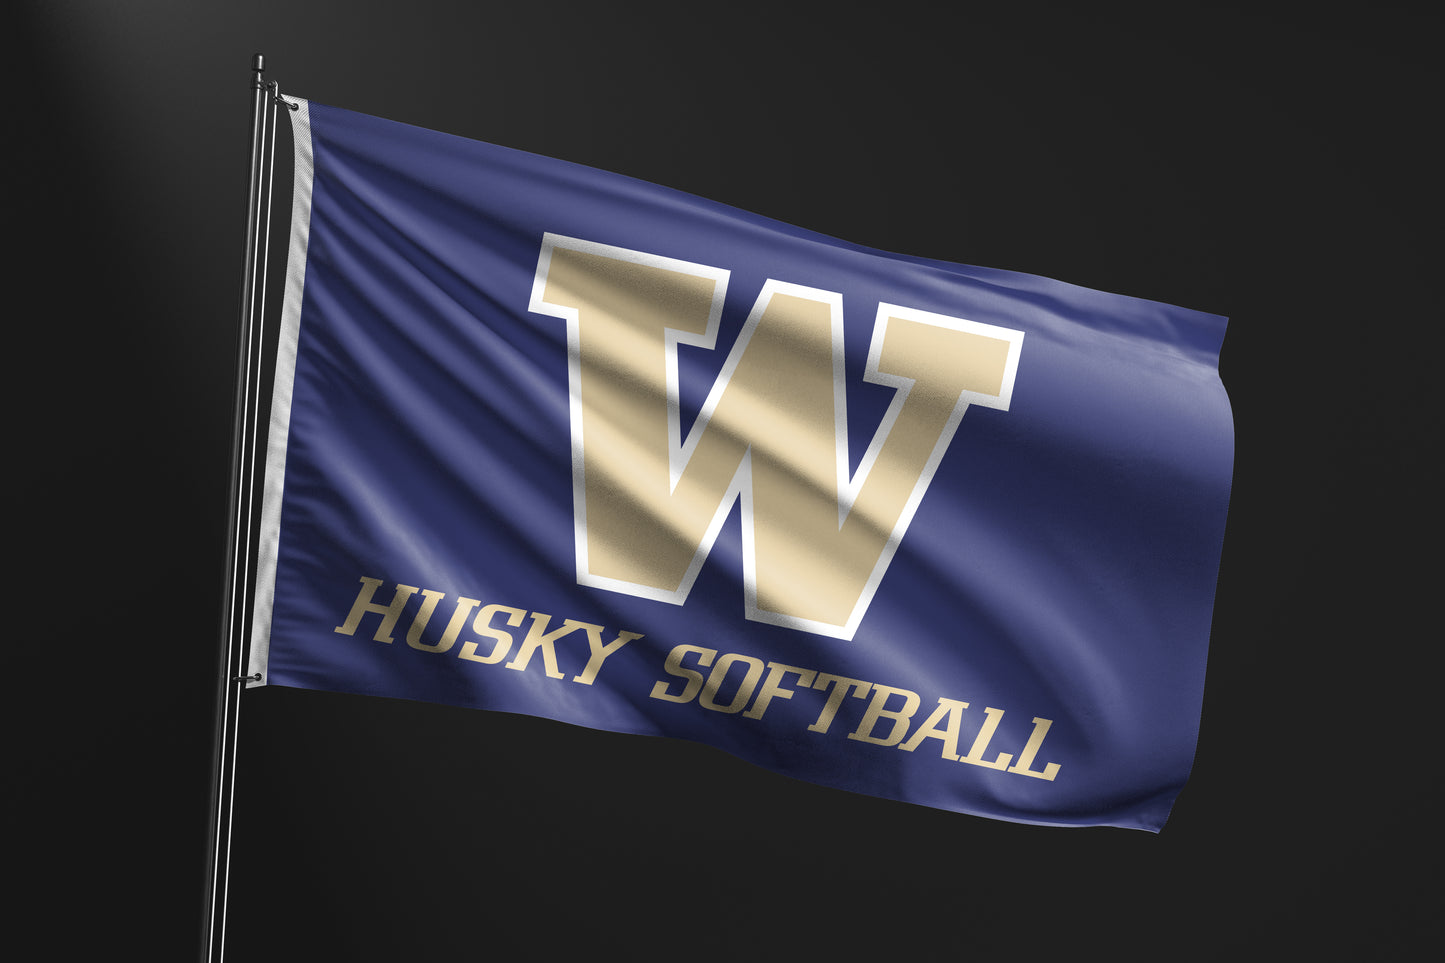 Washington Husky Softball 3x5 Flag